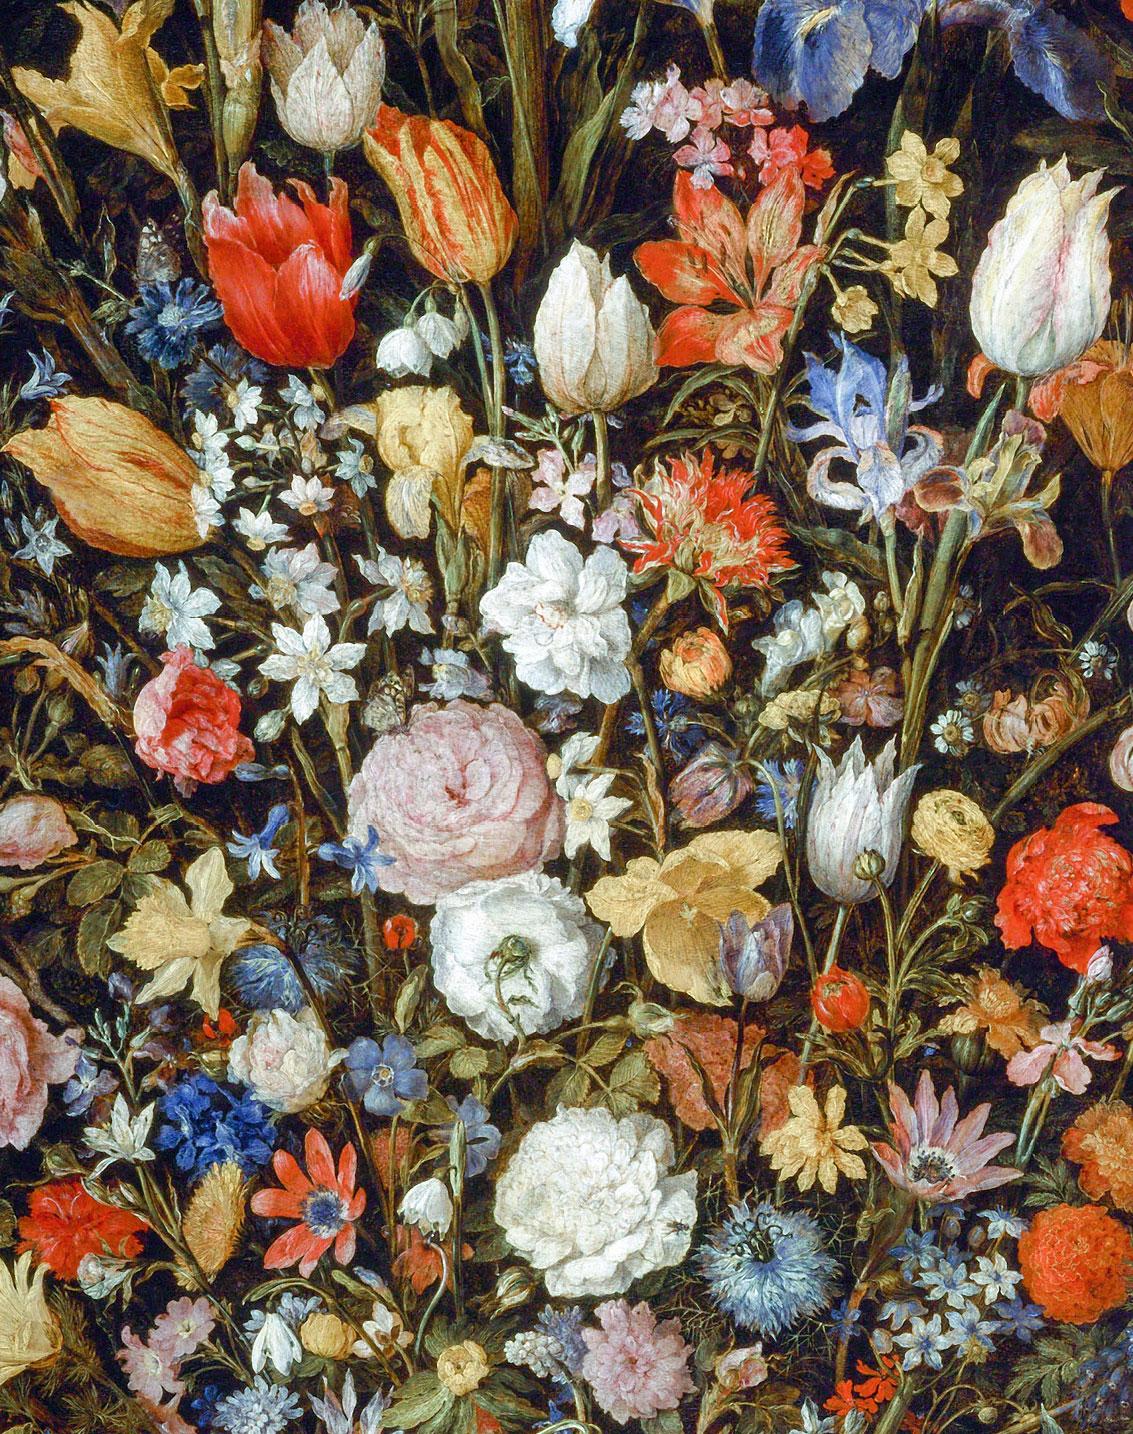 D'aprs Jan Brueghel l'Ancien (1568 - 1625), d'aprs Flowers in a Wooden Vessel - Print de Jan Brueghel The Elder